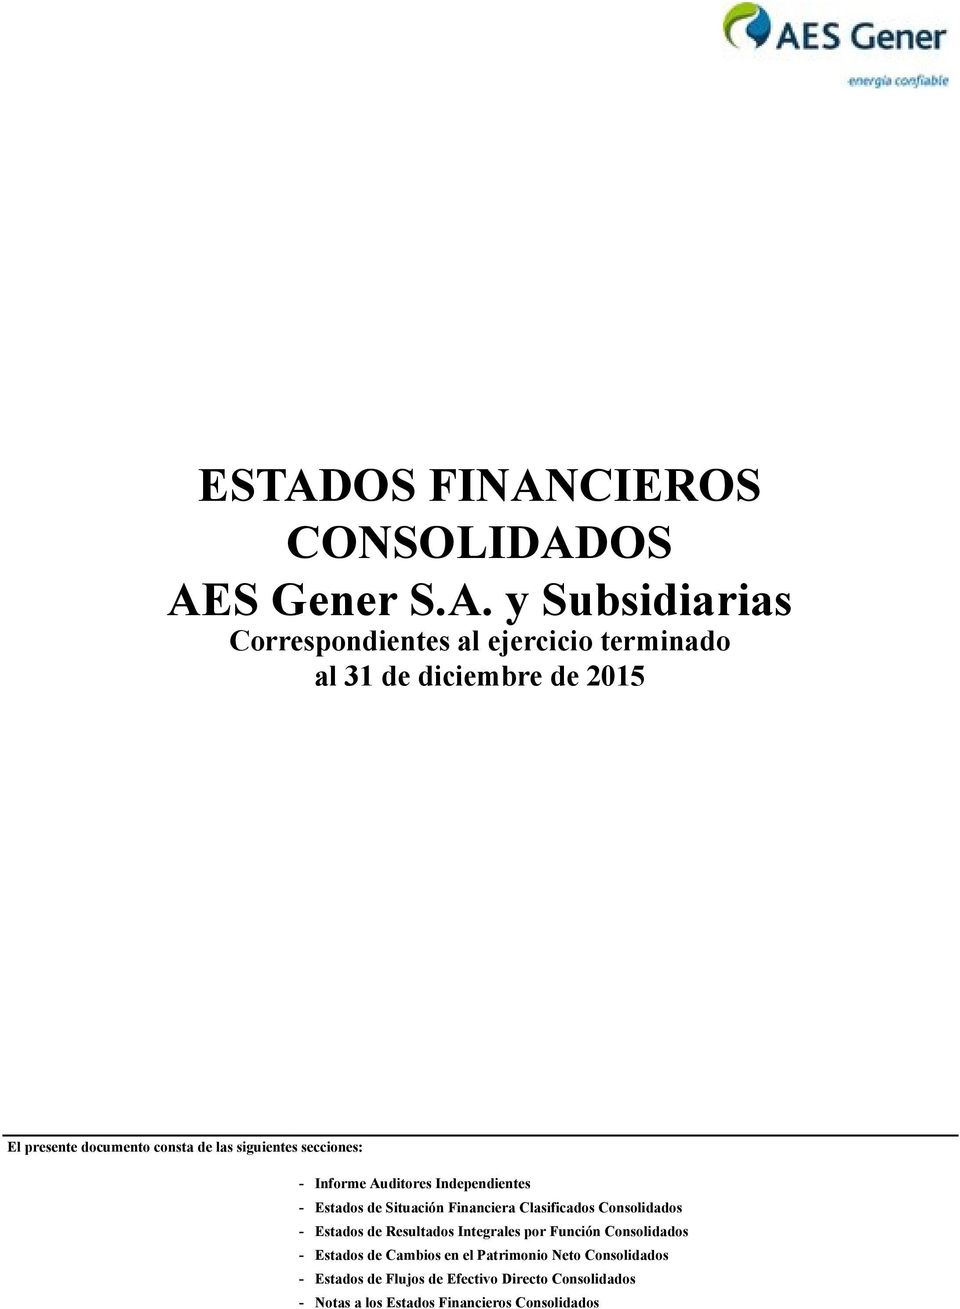 Financiera Clasificados Consolidados - Estados de Resultados Integrales por Función Consolidados - Estados de Cambios